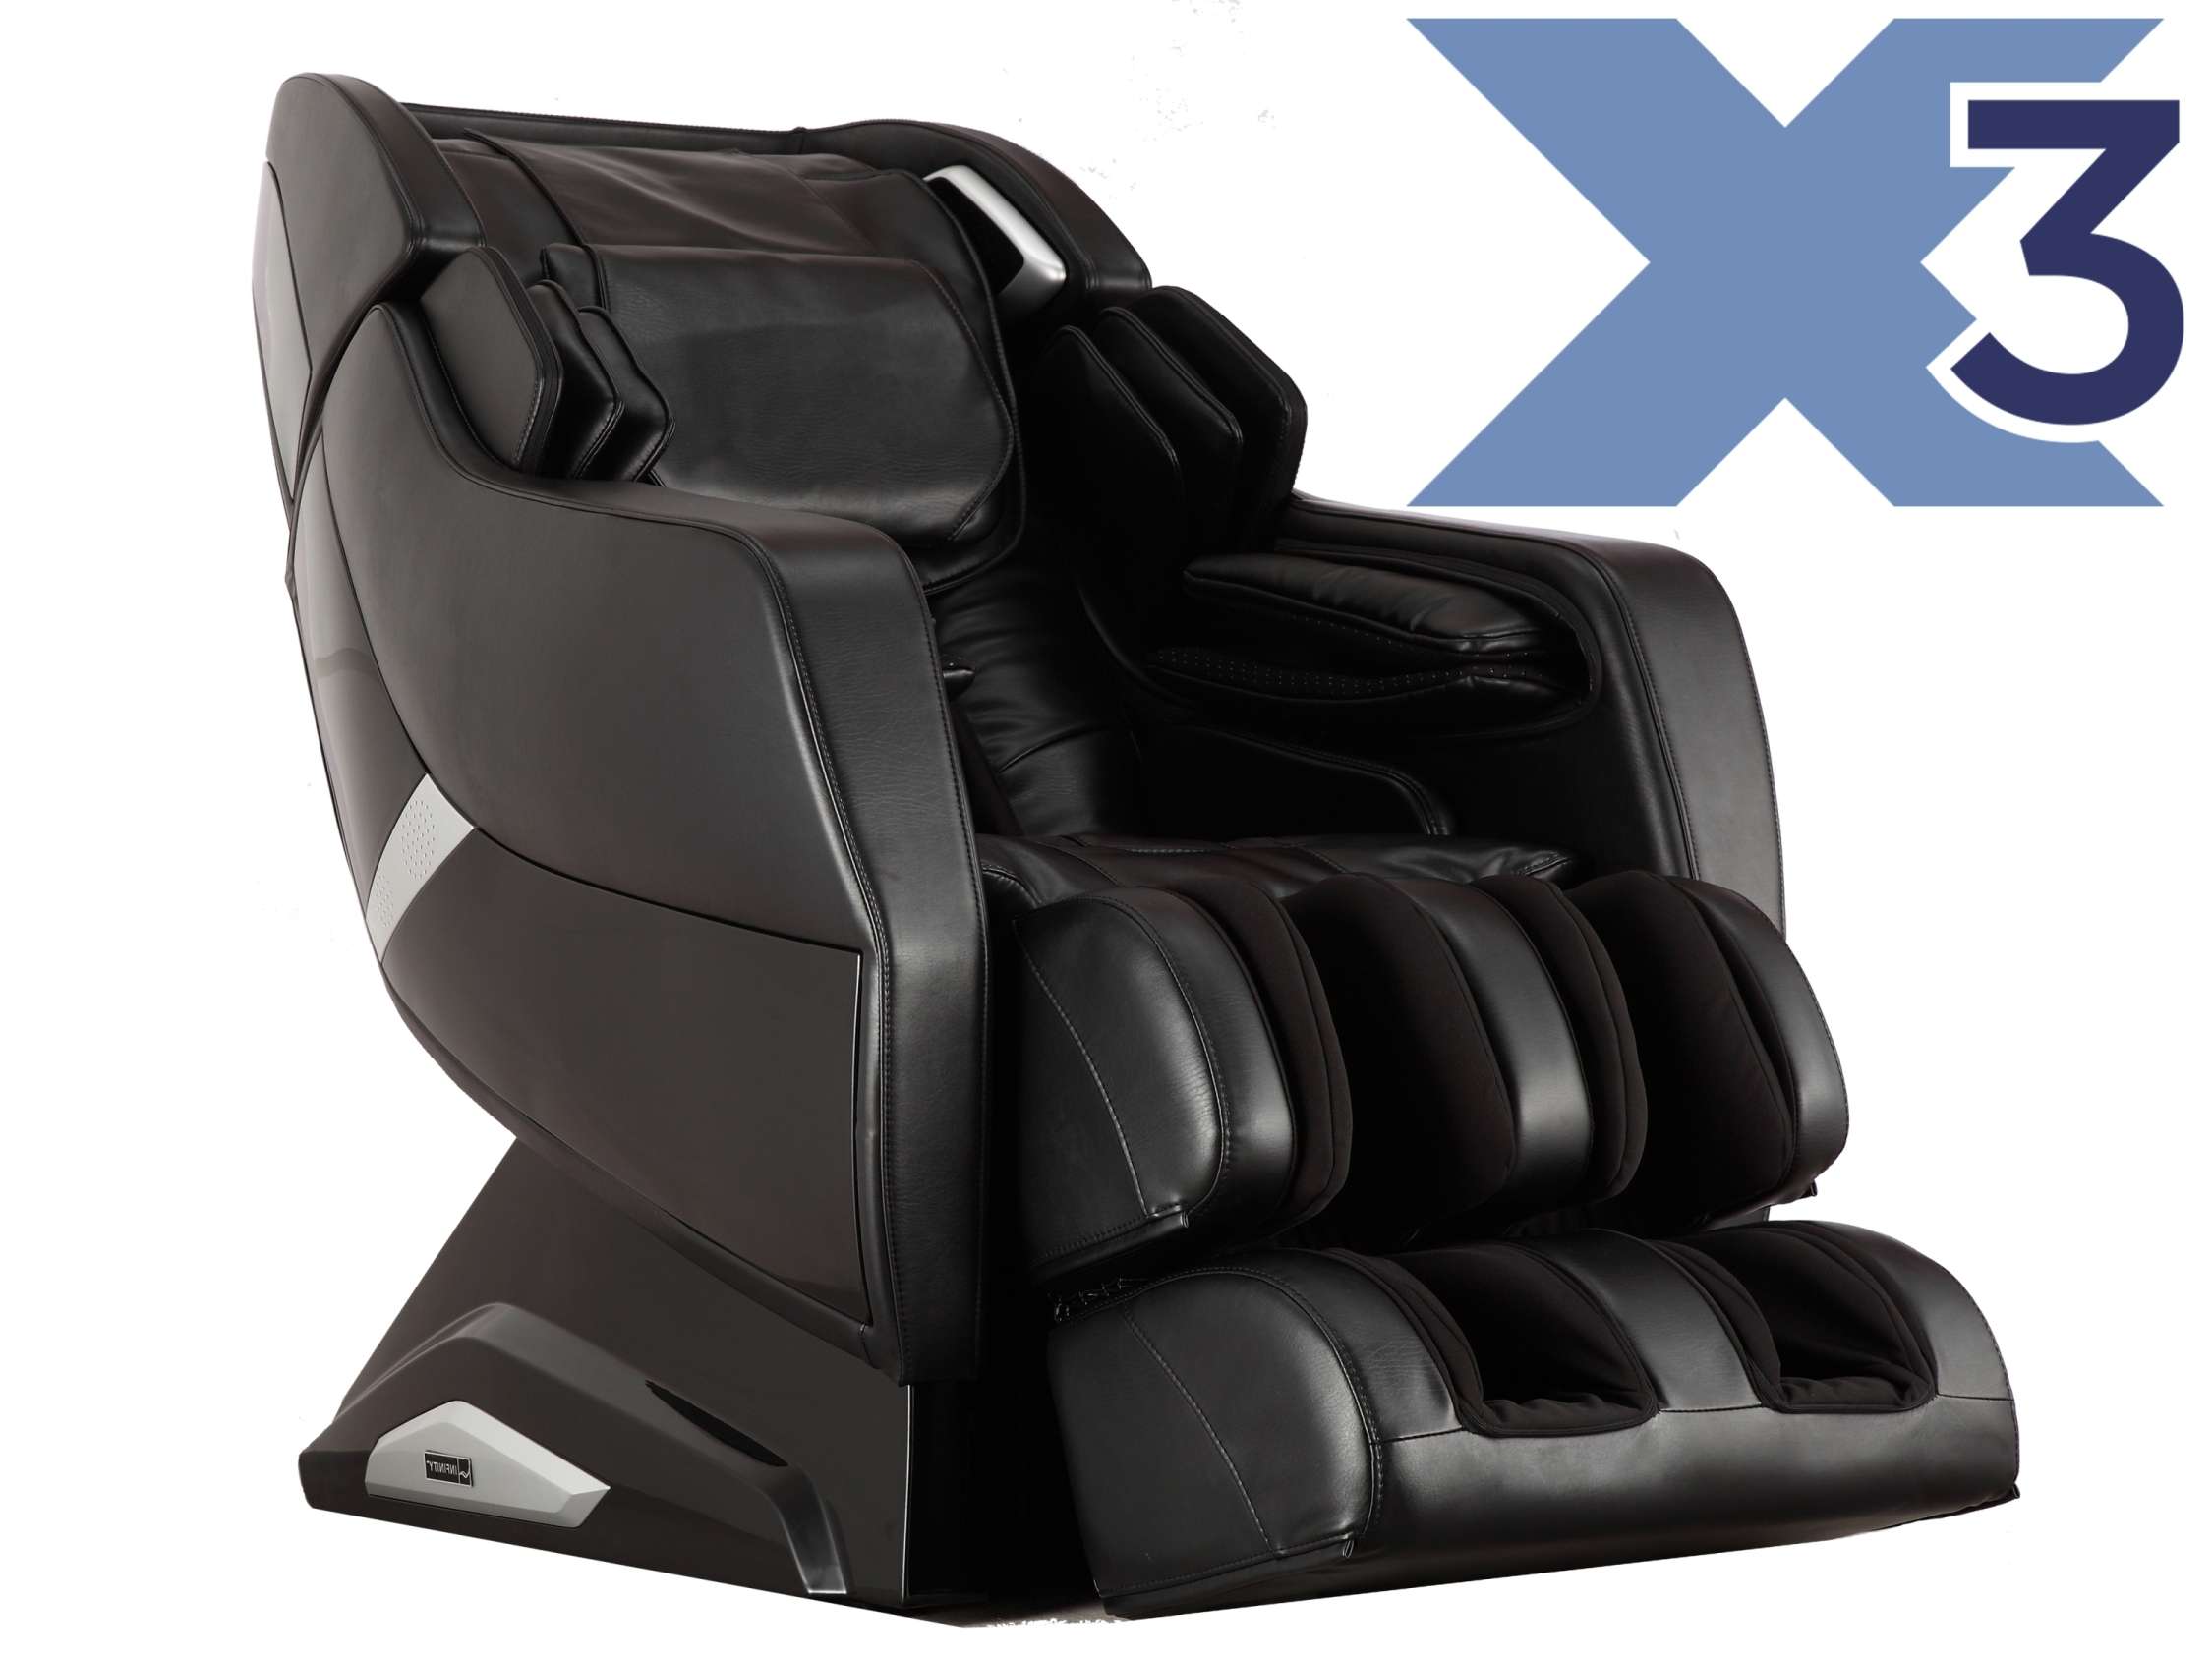 Infinity Massage Chairs to Expand Brookstone Partnership ...